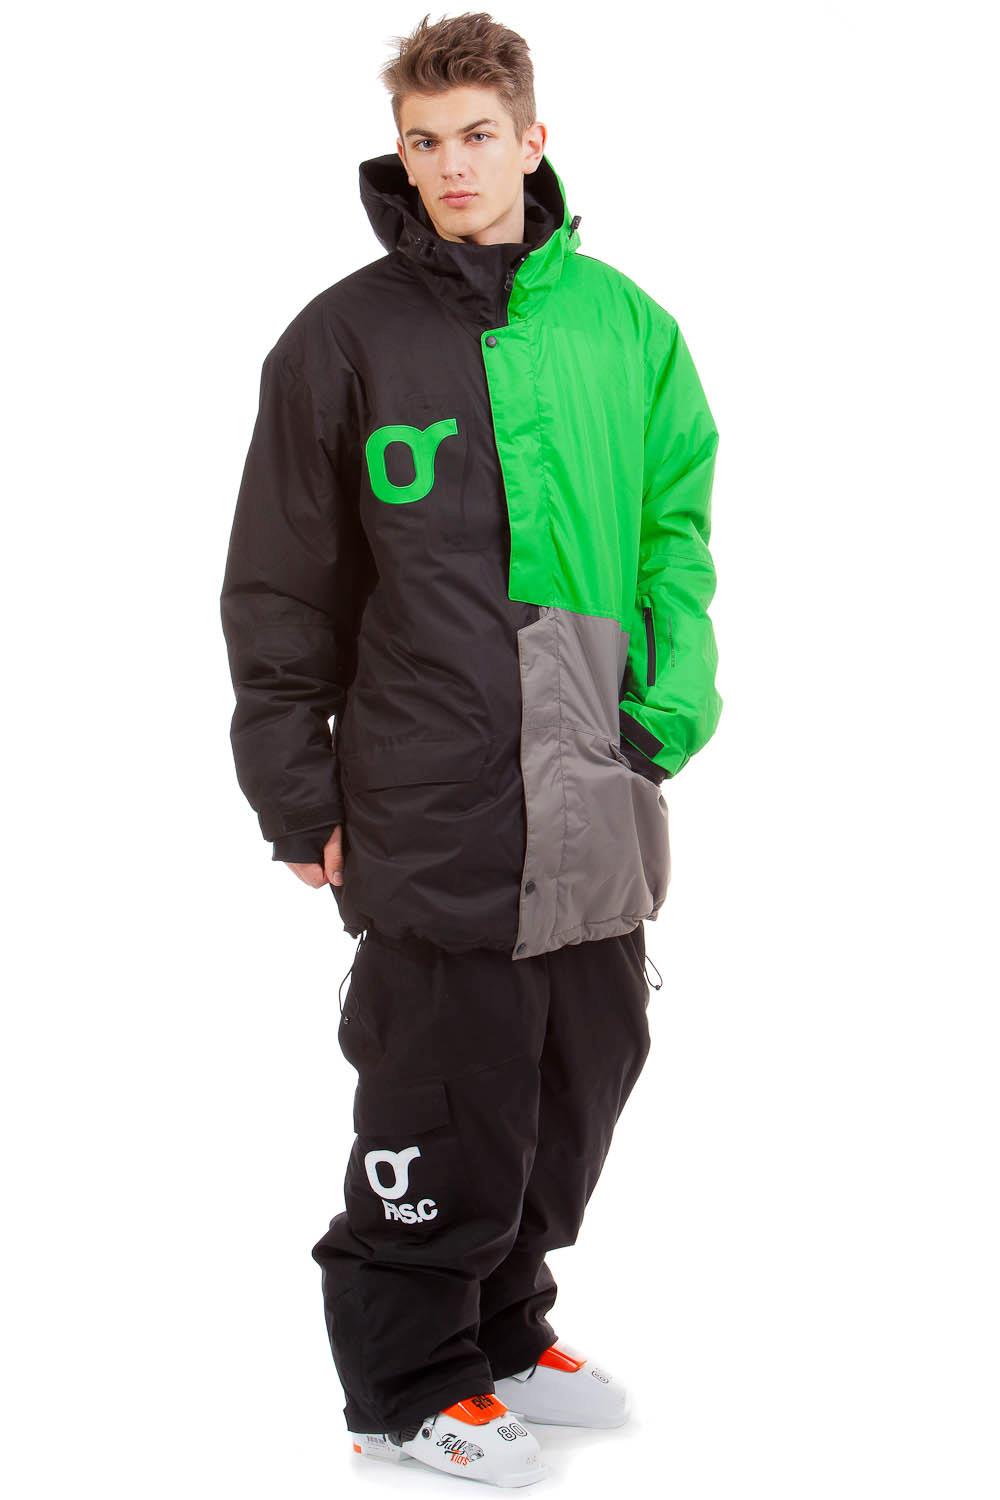 Чоловіча куртка для сноуборду Fasc Falco Green (XXL)